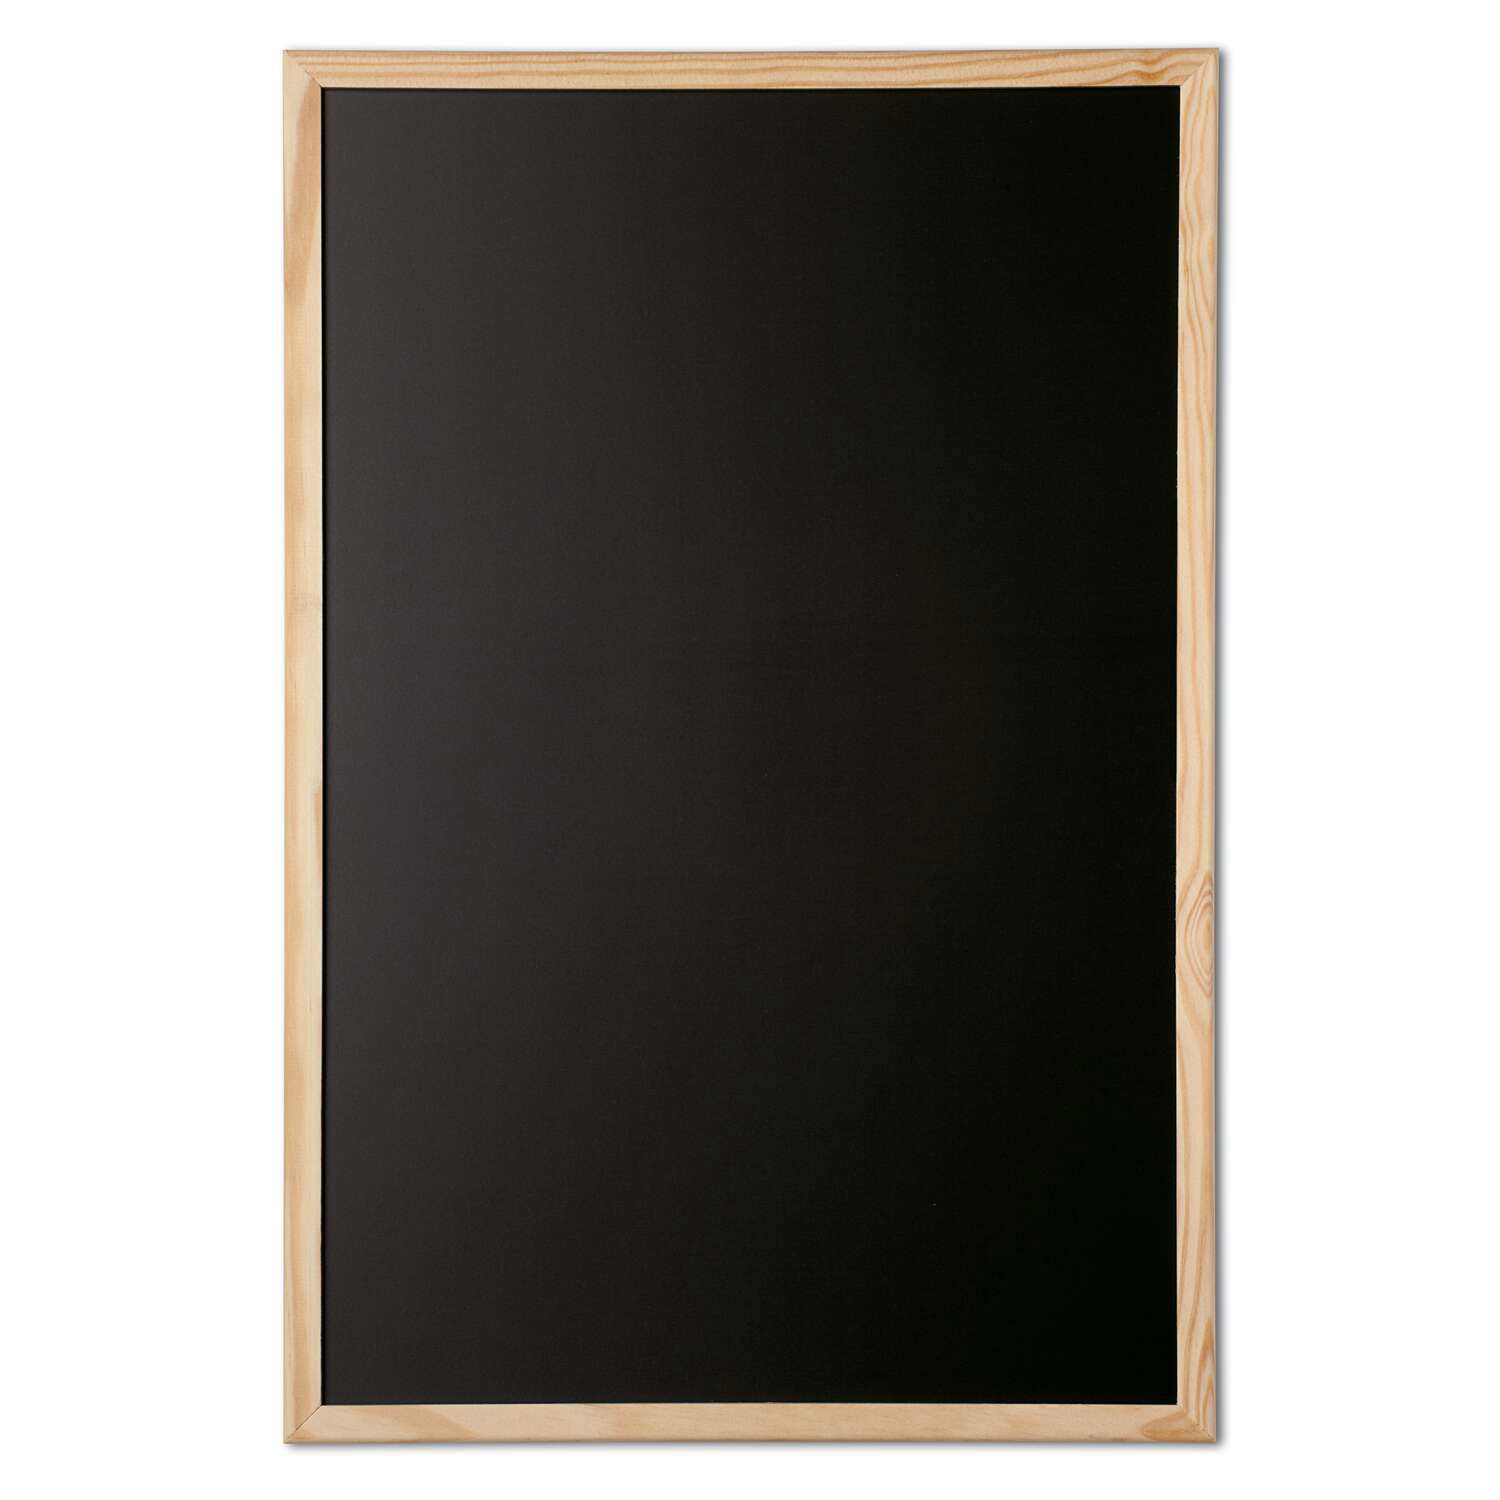 Tableau pour craie, cadre bois, 40 x 60 cm